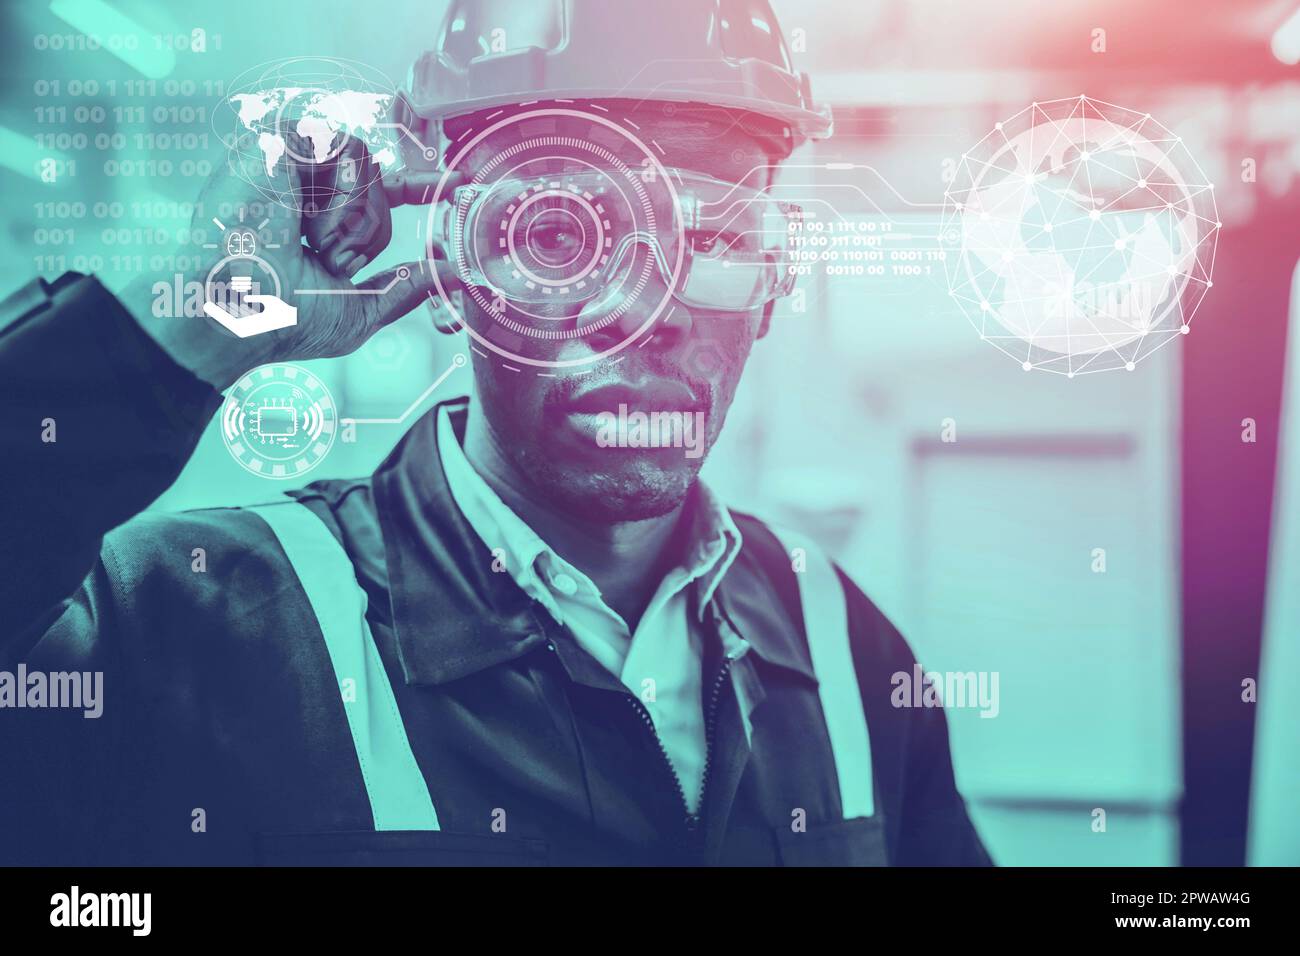 Smart Engineer Human Resources futuristisches IOT in Industrie 4,0. Die nächste Generation fortschrittlicher Visionäre für das Konzept der hohen Produktivität. Stockfoto